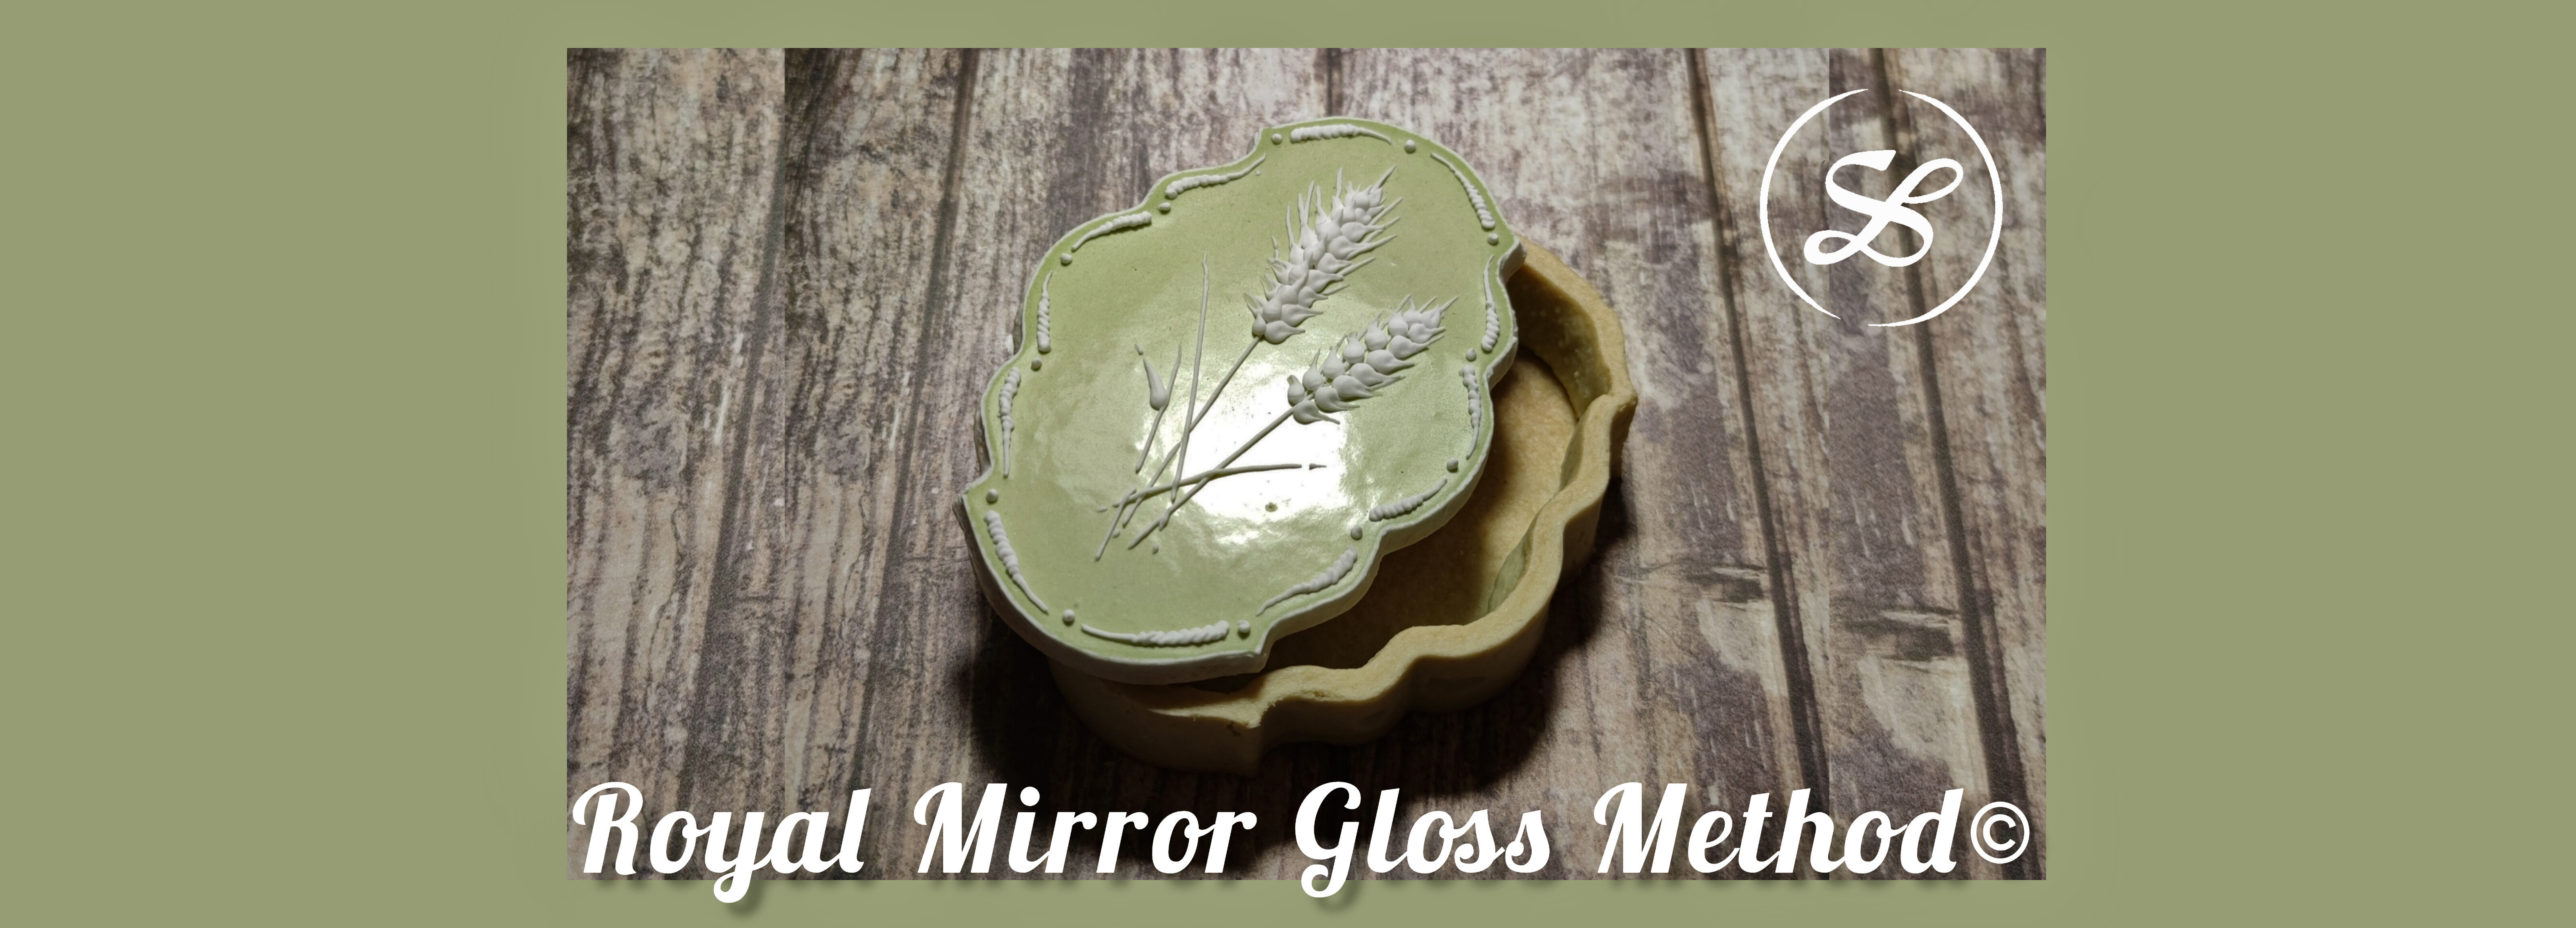 Royal Mirror Gloss Method©